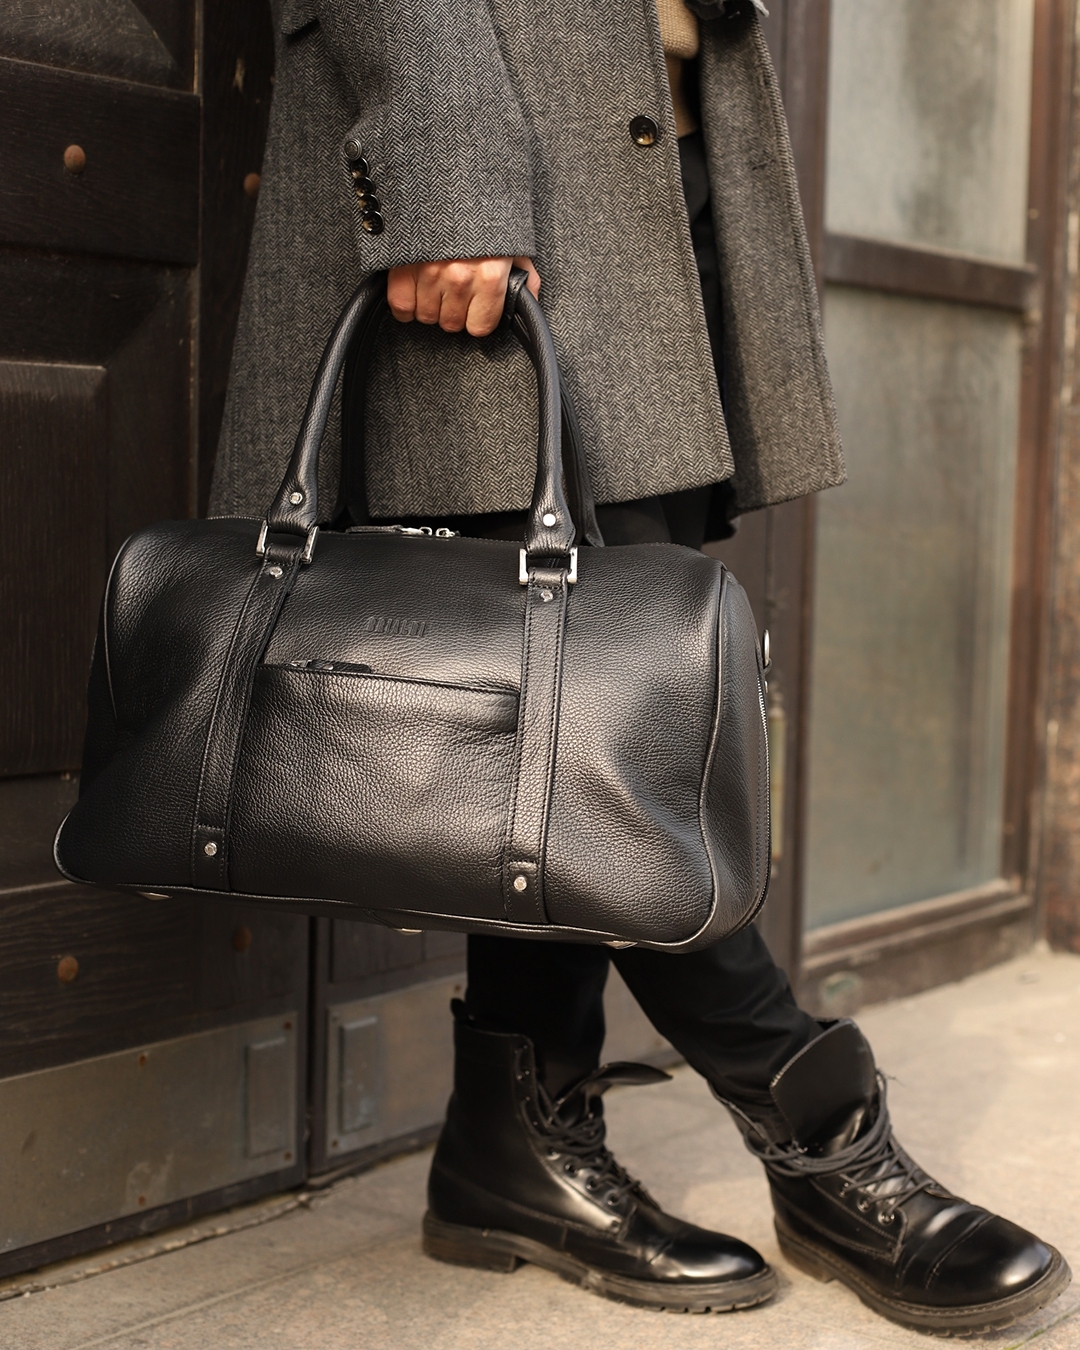 Кожаные сумки и рюкзаки - 𝙈𝙖𝙜𝙚𝙡𝙡𝙖𝙣 — находка для тех, кто предпочитает стильный классический дизайн и минимум лишнего👌
⠀
Больше подробностей смотрите по тегу: #brialdimagellan
⠀
• Цена: 19 950 р.
⠀
Су...